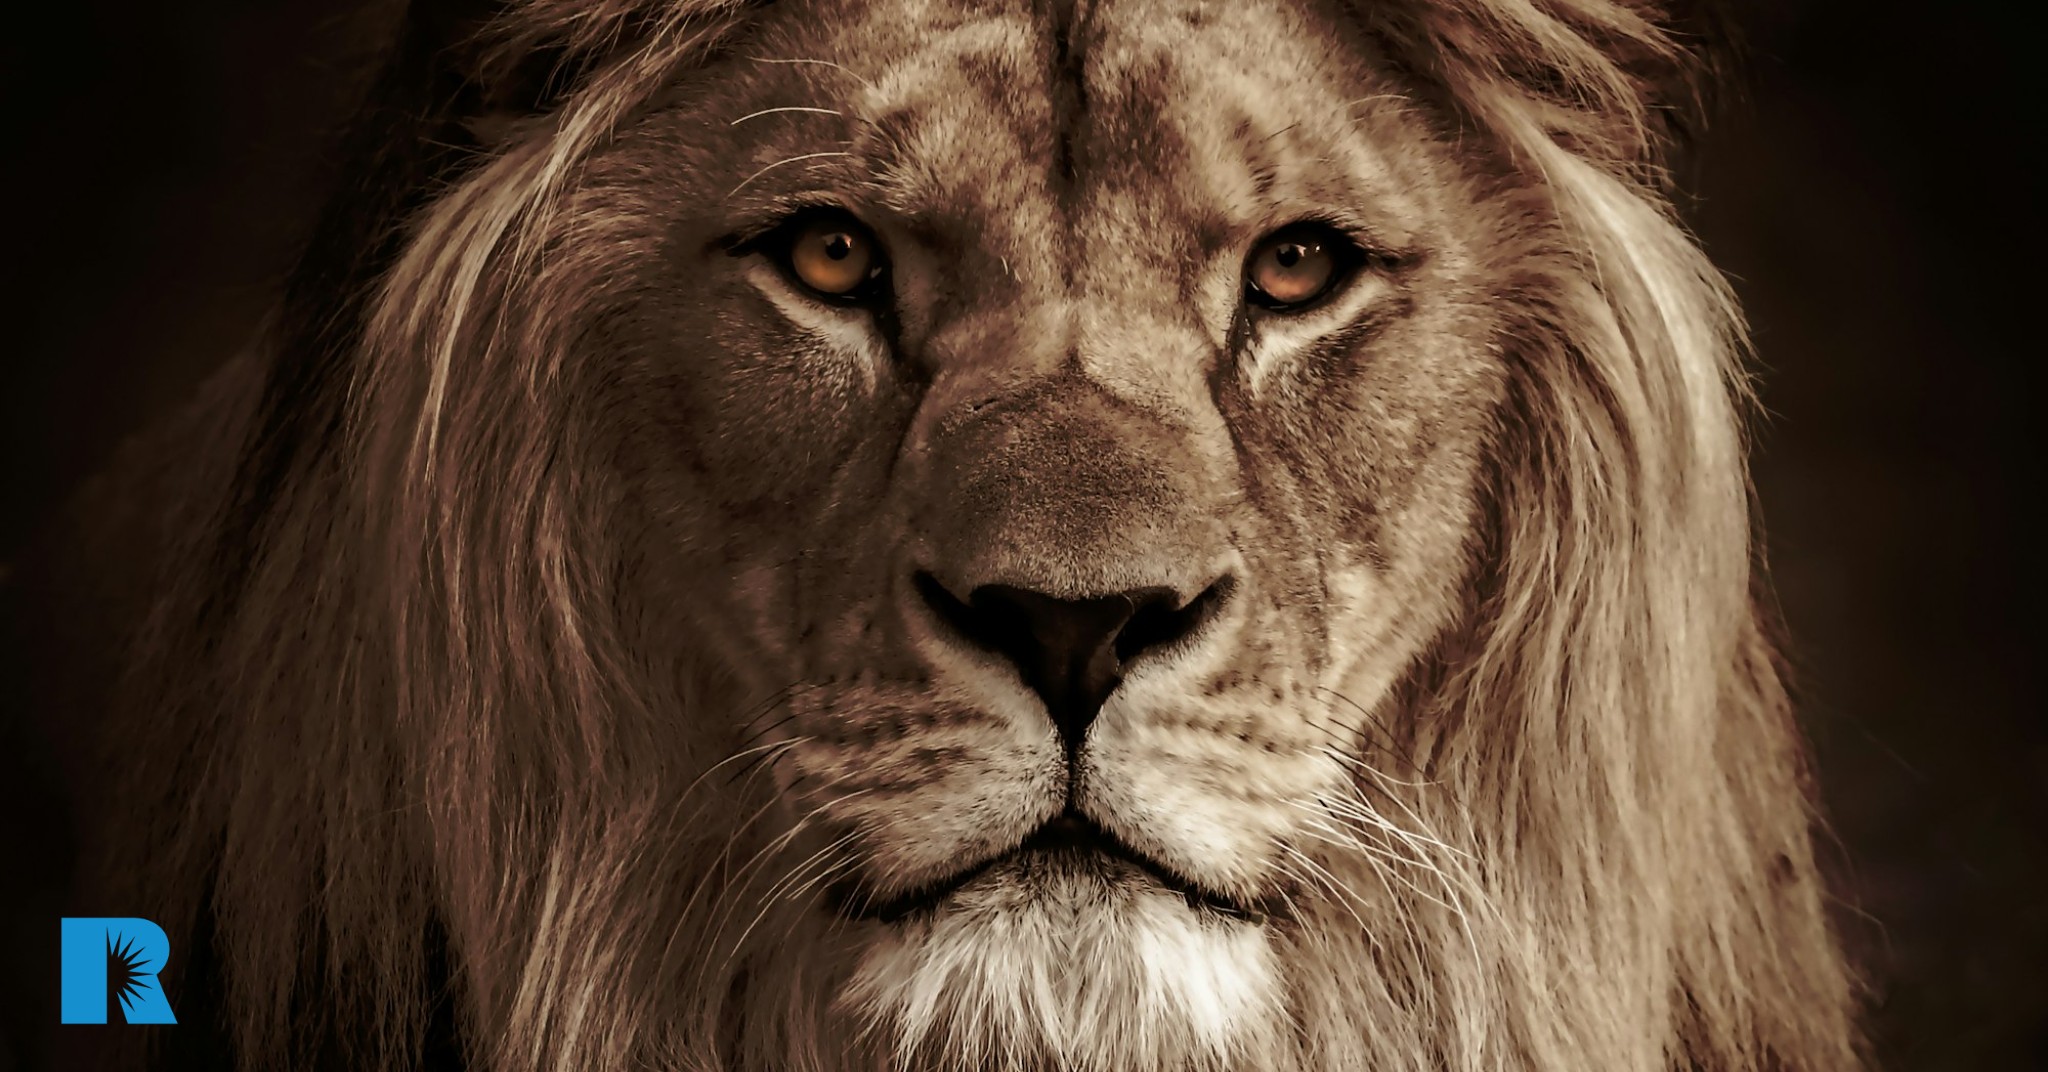 A close-up photo of a lion's face.